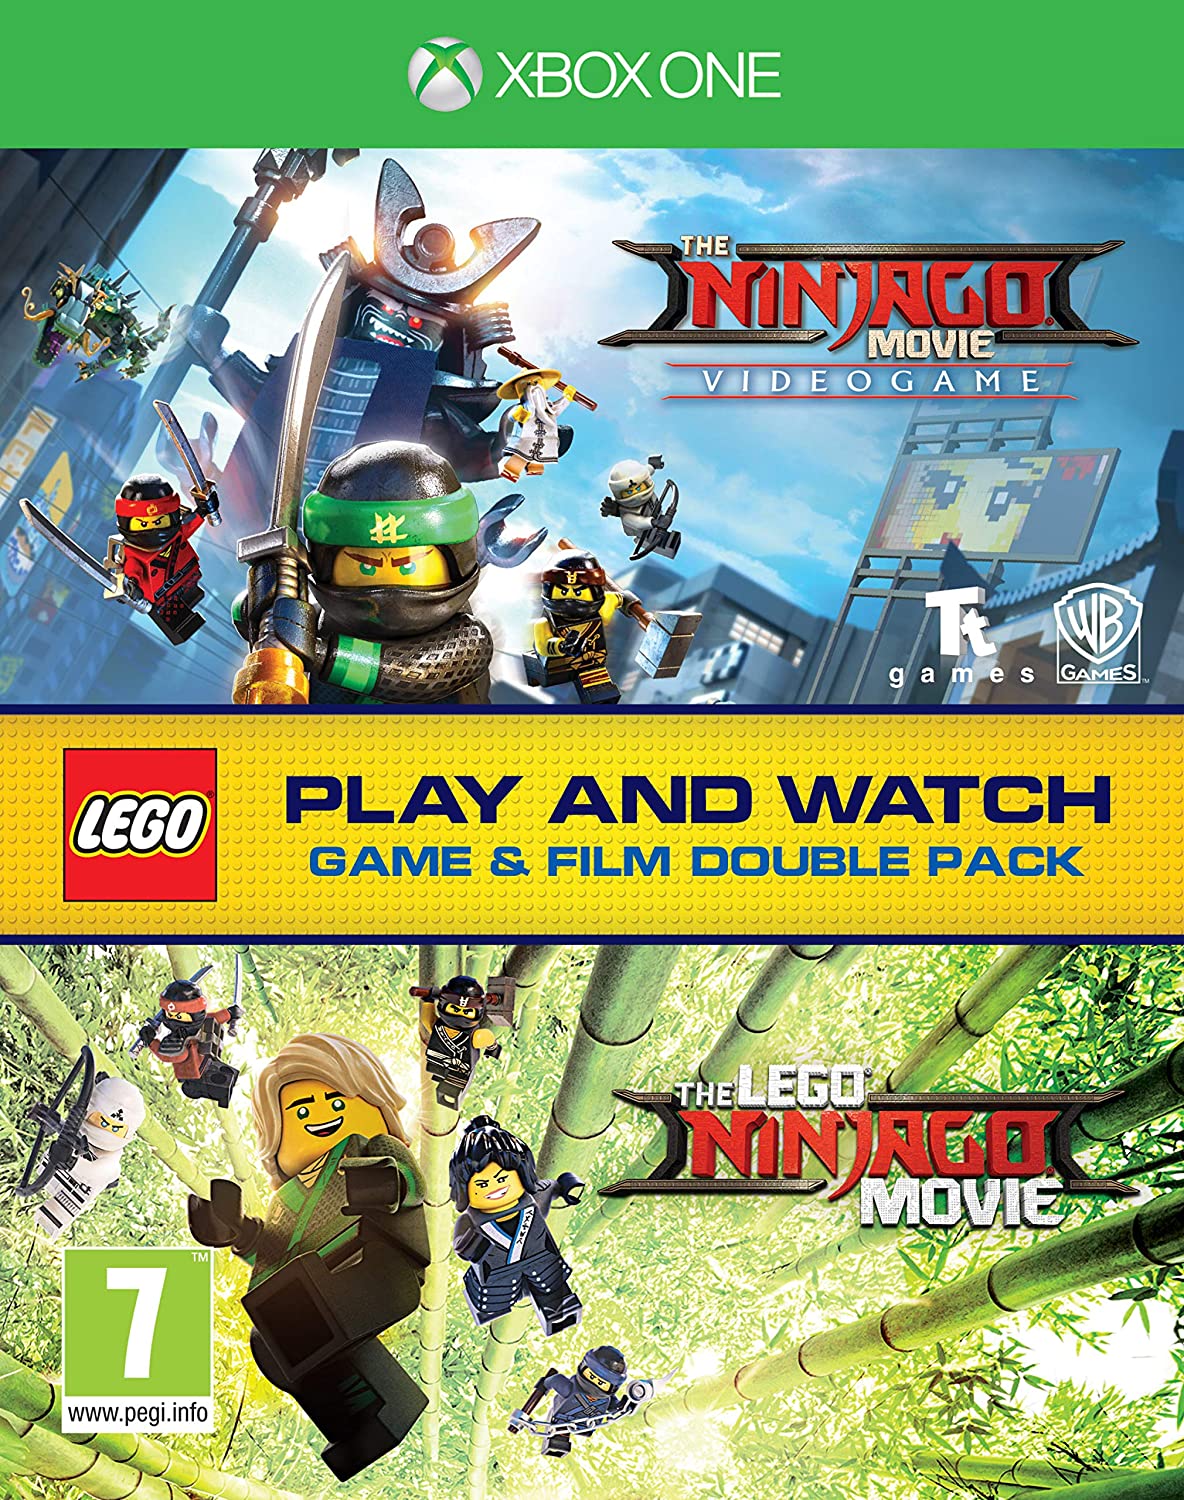 LEGO Ninjago Game & Film Double Pack (EUR)*